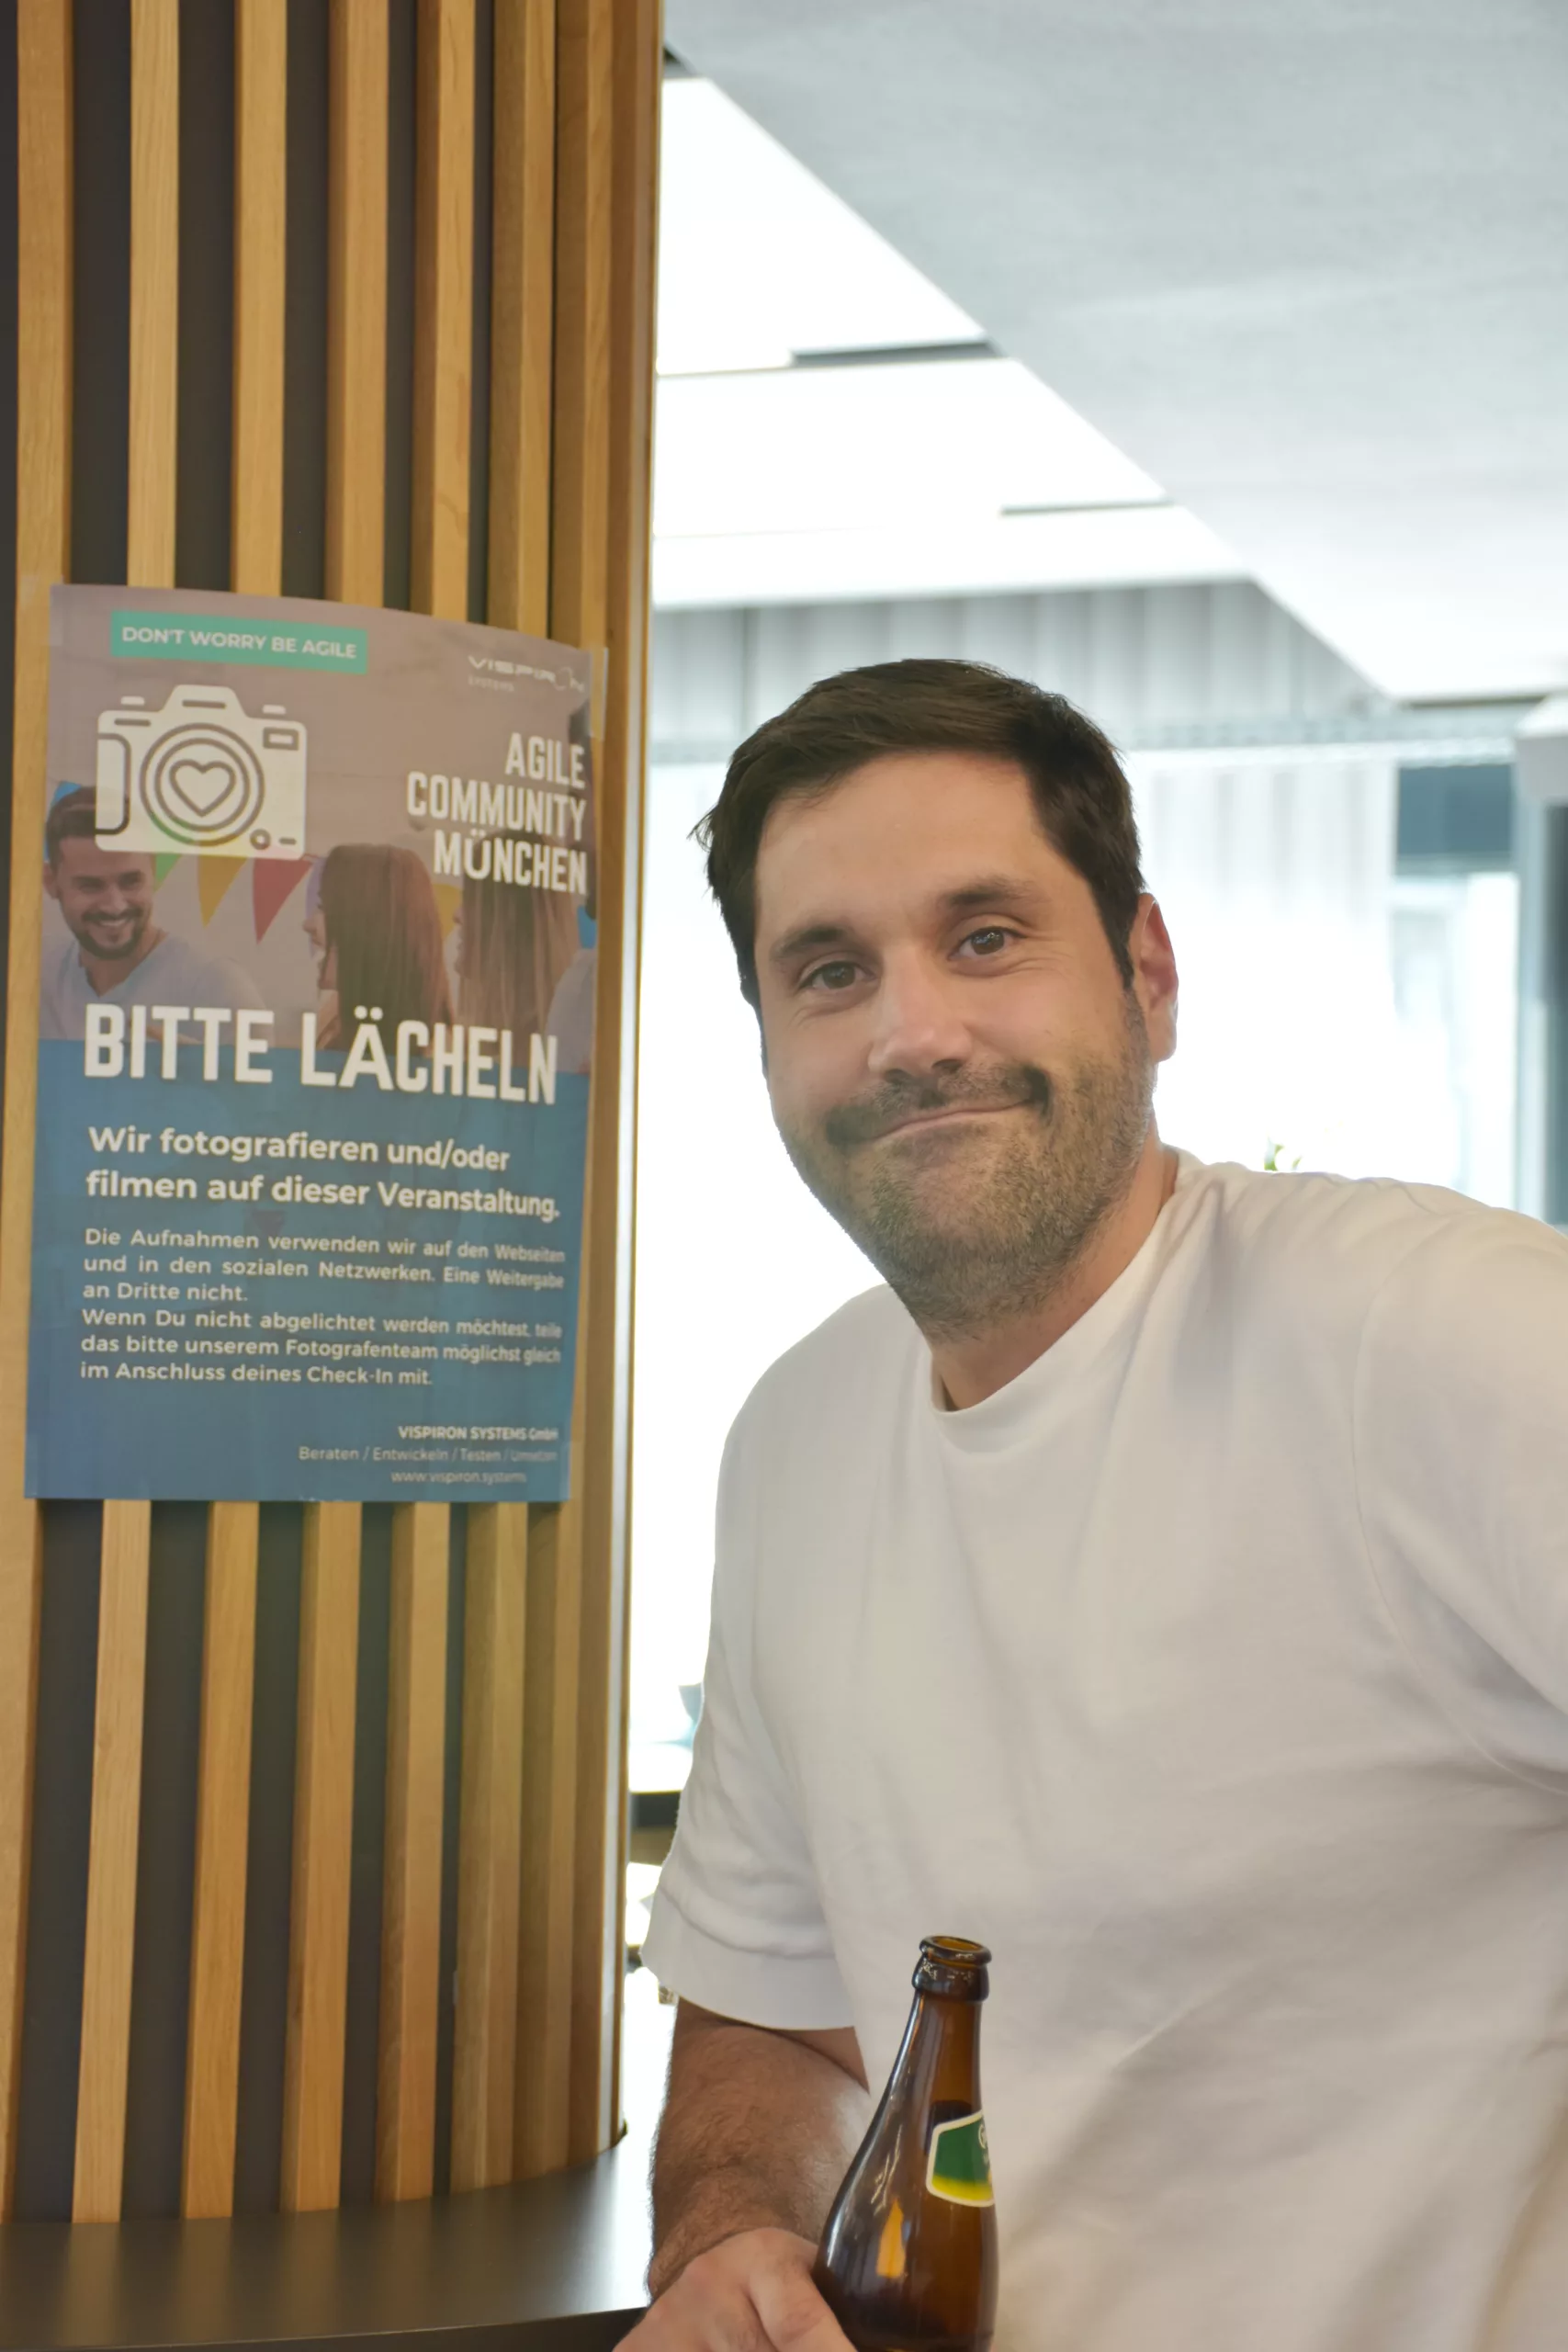 Foto eines Teilnehmenden der Agile Community München vor einem Plakat Bitte lächeln